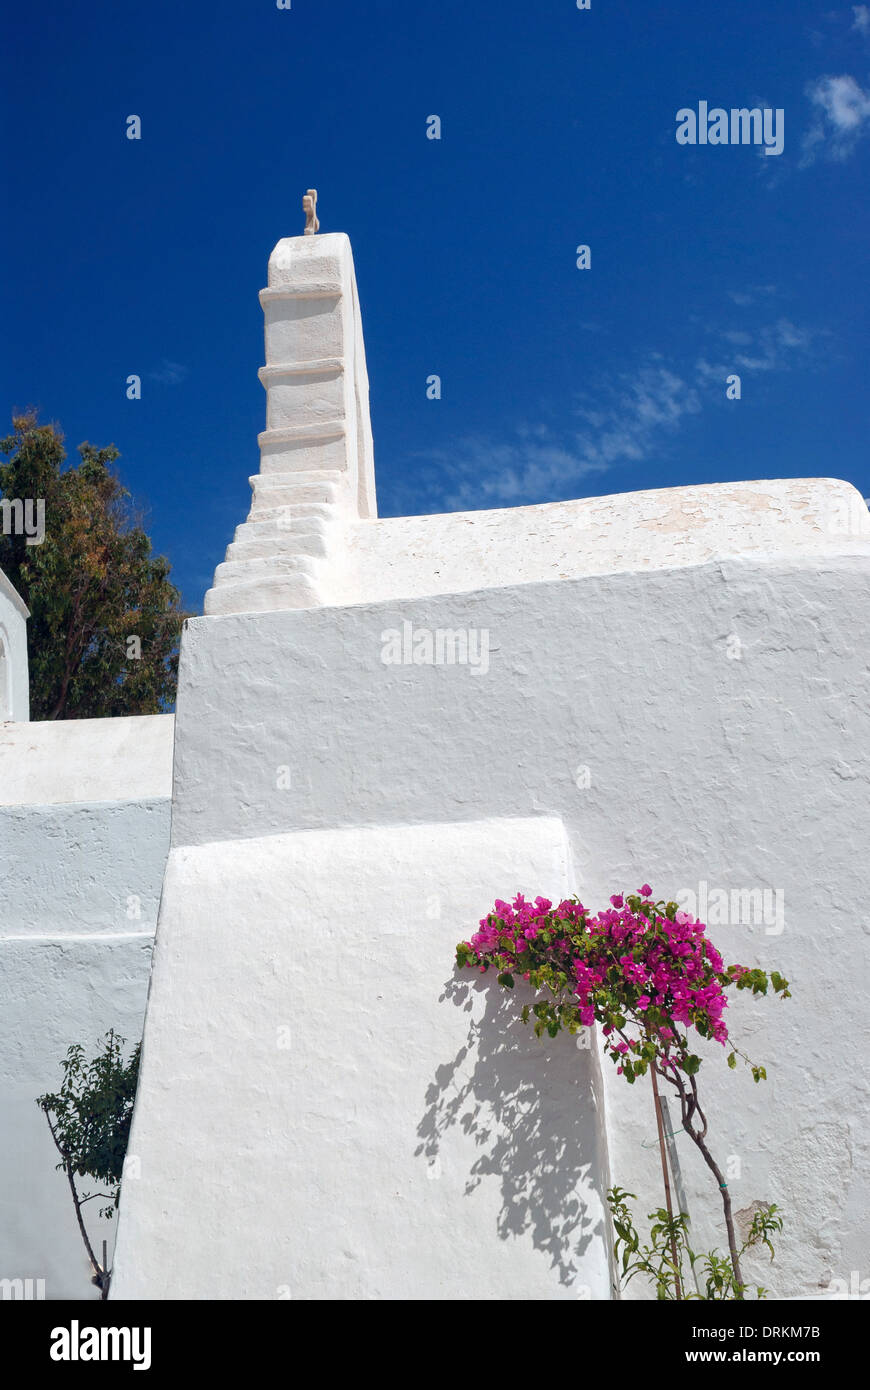 Beffroi de ciel bleu sur l'île de Mykonos, Grèce Banque D'Images